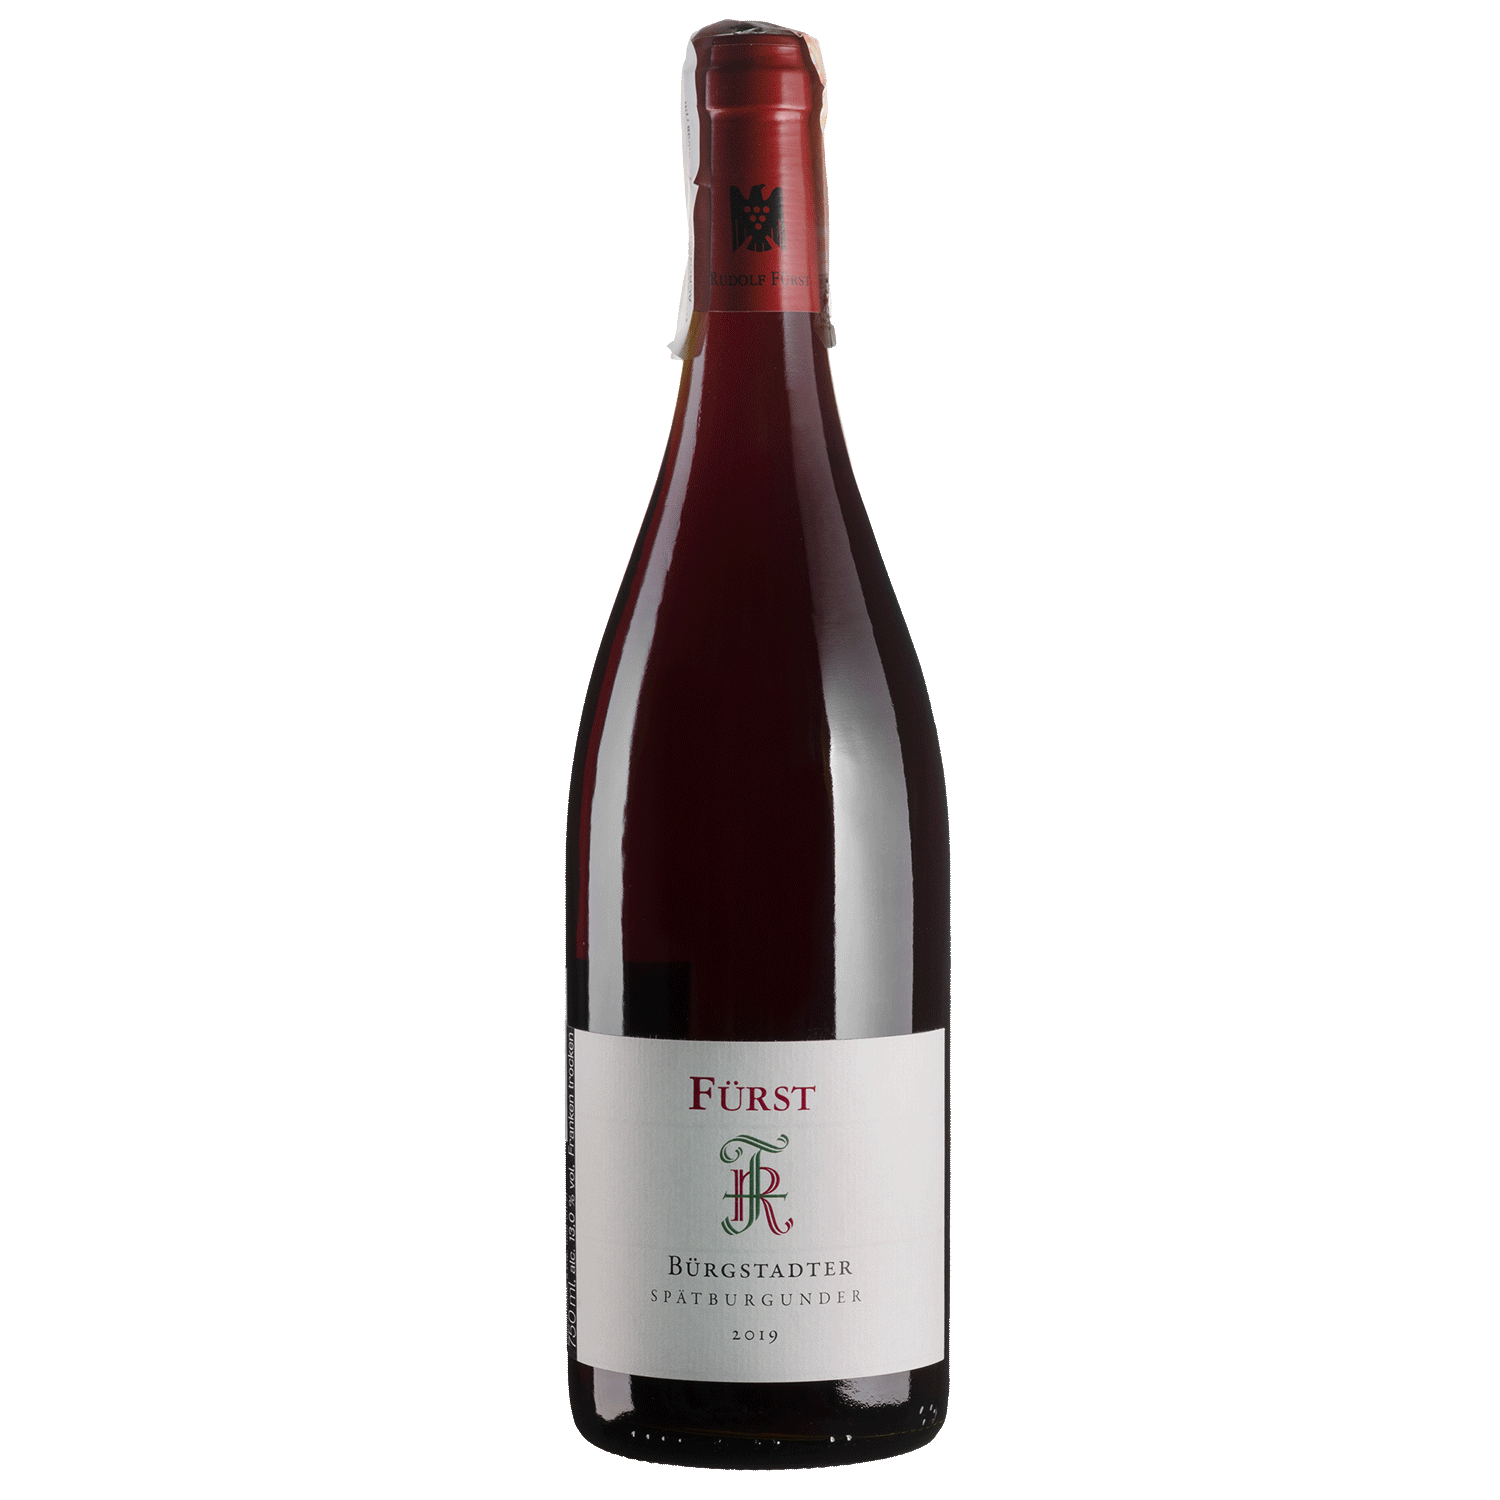 Вино Rudolf Furst Burgstadter Spatburgunder 2019, красное, сухое, 0,75 л - фото 1